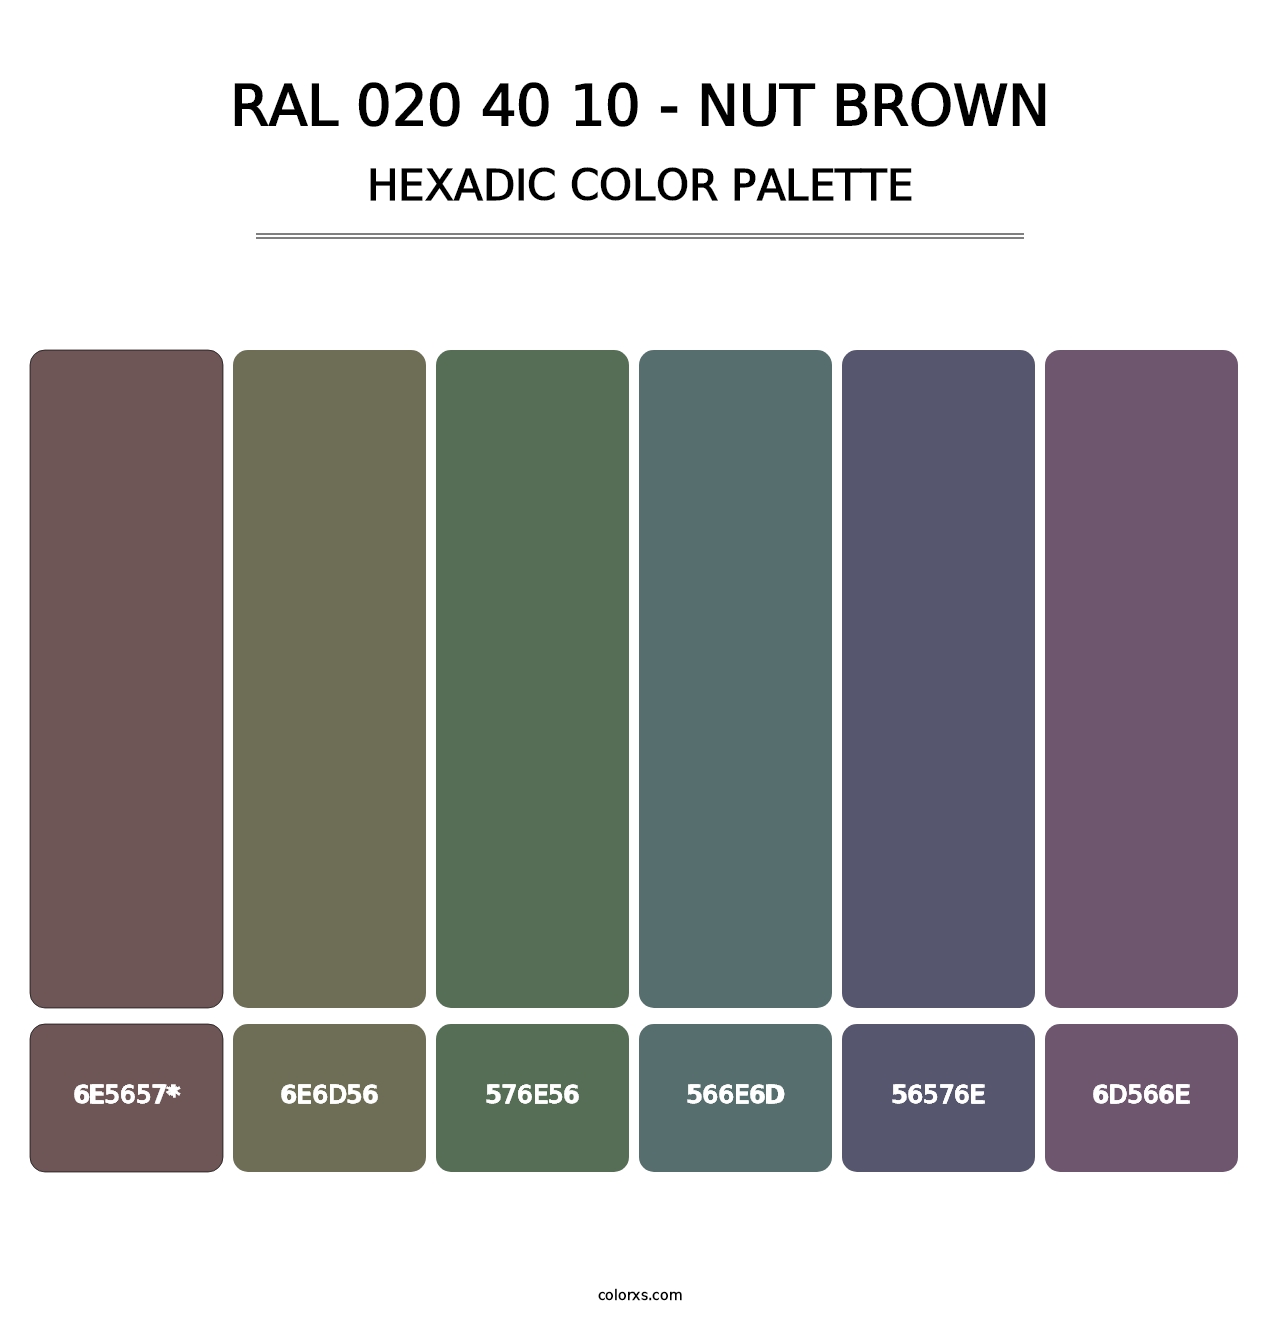 RAL 020 40 10 - Nut Brown - Hexadic Color Palette